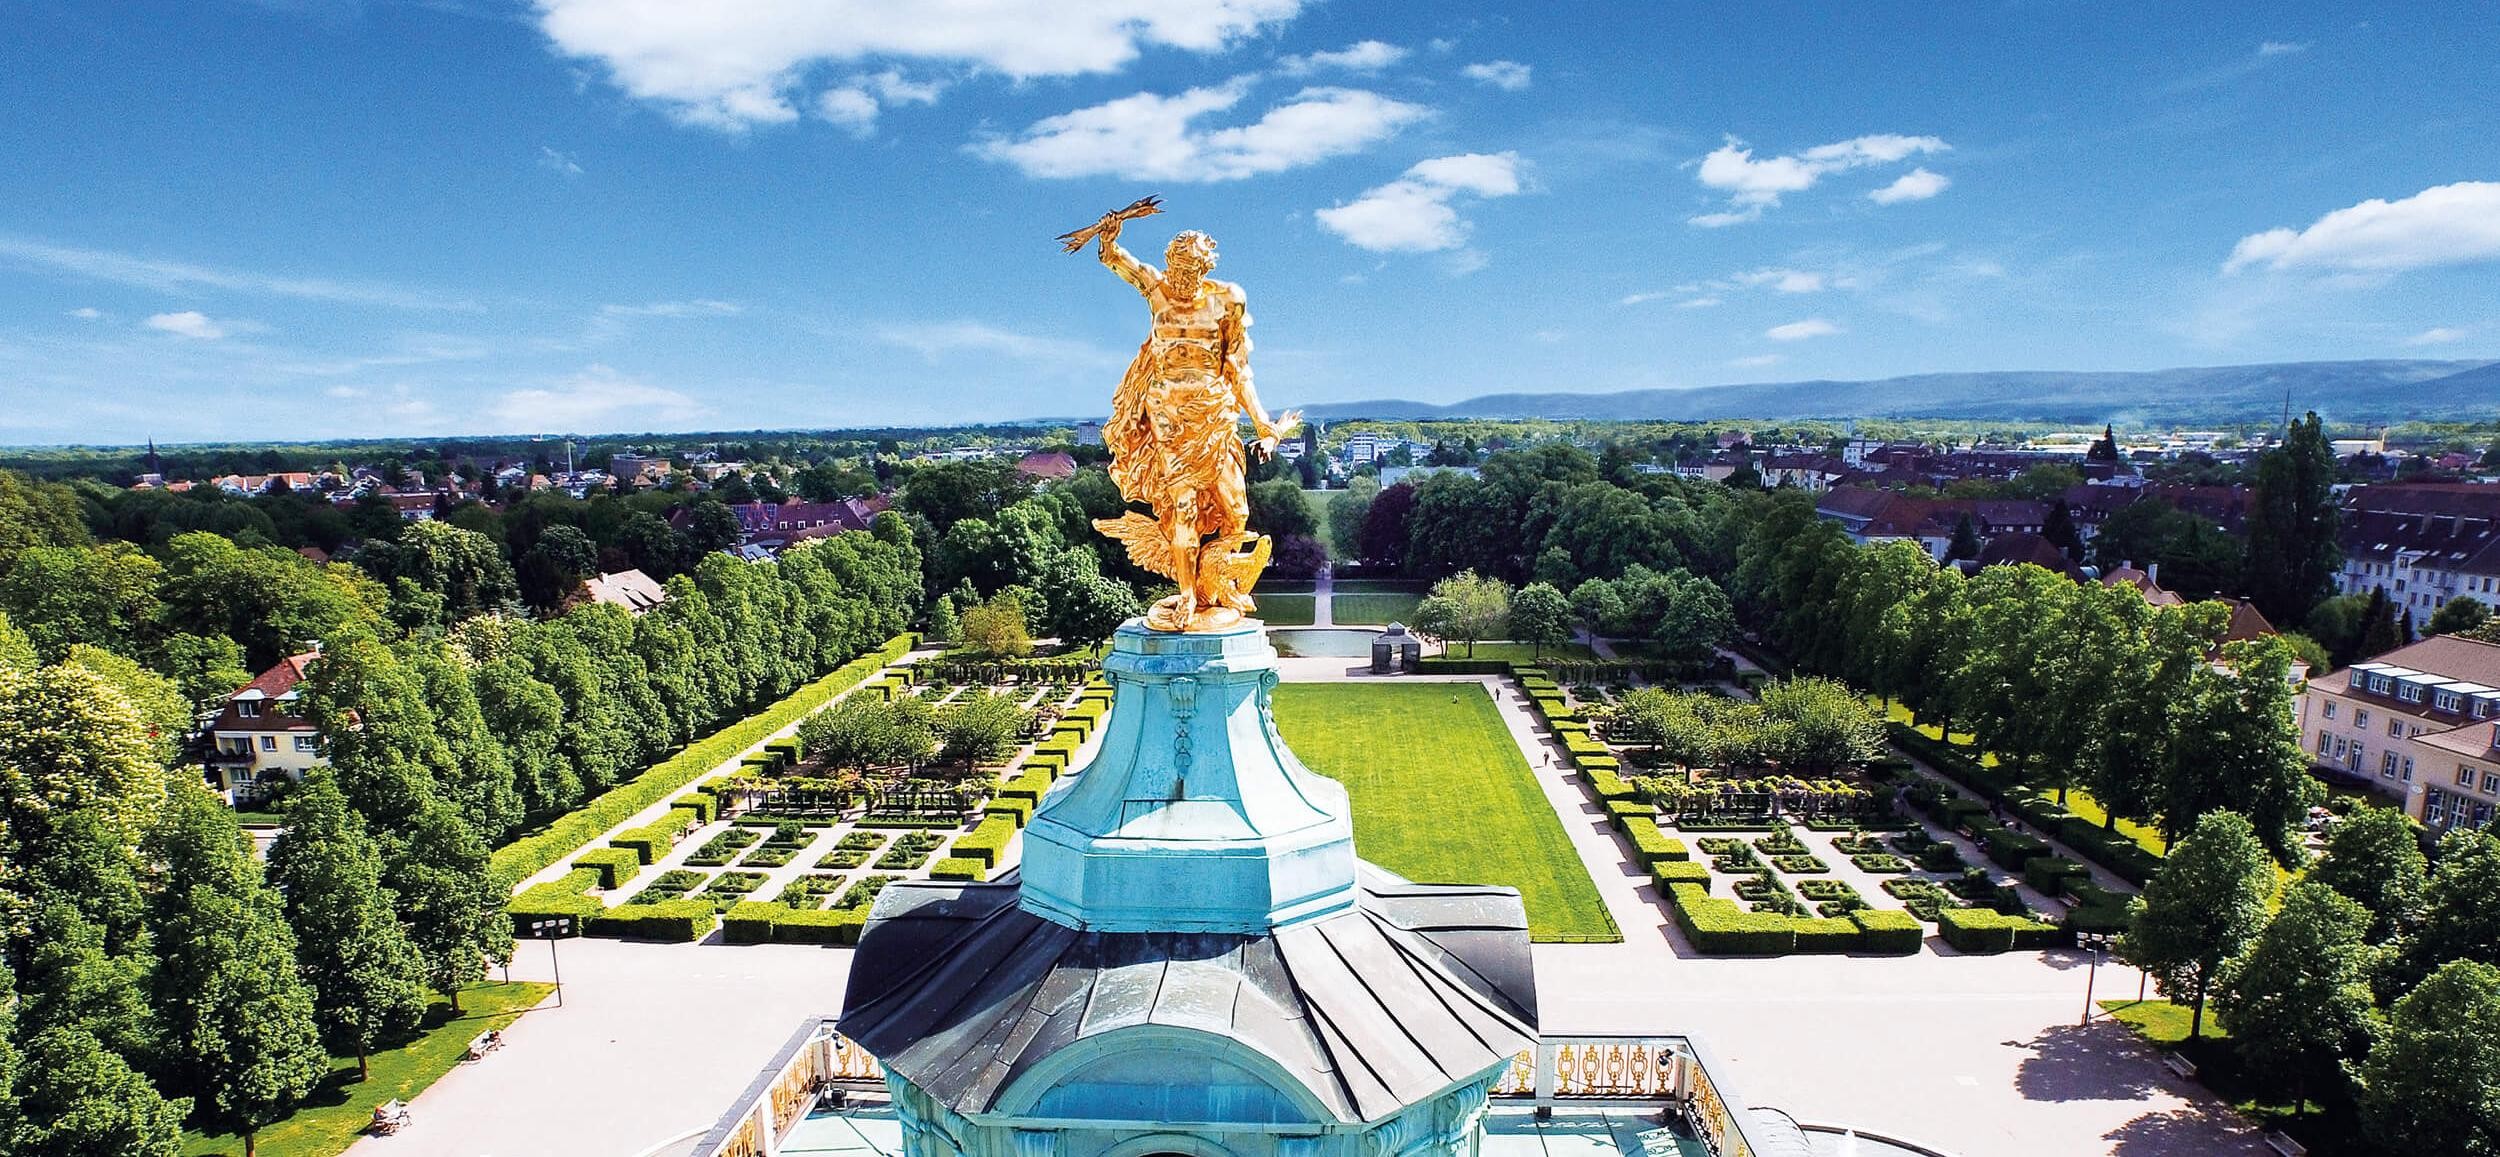 Goldener Mann auf dem Schloss in Rastatt mit Blick auf Innenstadt